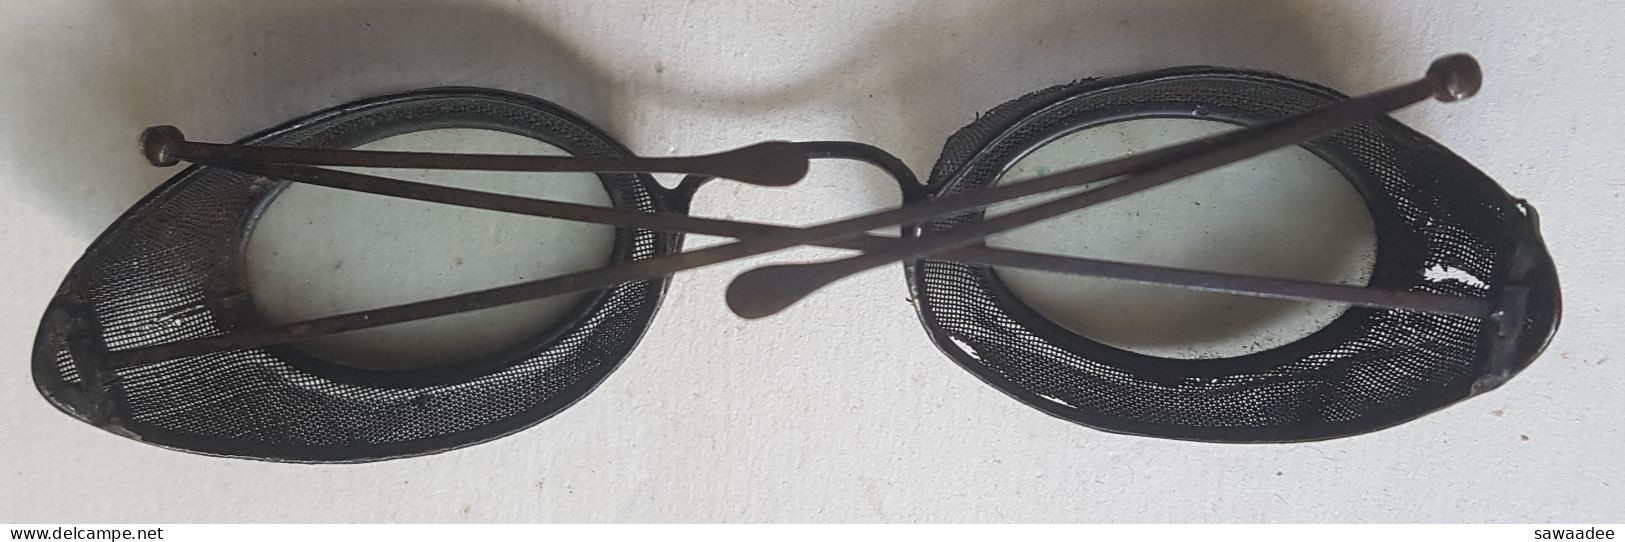 ACCESSOIRE - MONTAGNE ? - TECHNIQUE ? - VERRES FUMES - OEILLERES GRILLAGEES - MONTURE METAL - DEBUT XX° - Sun Glasses